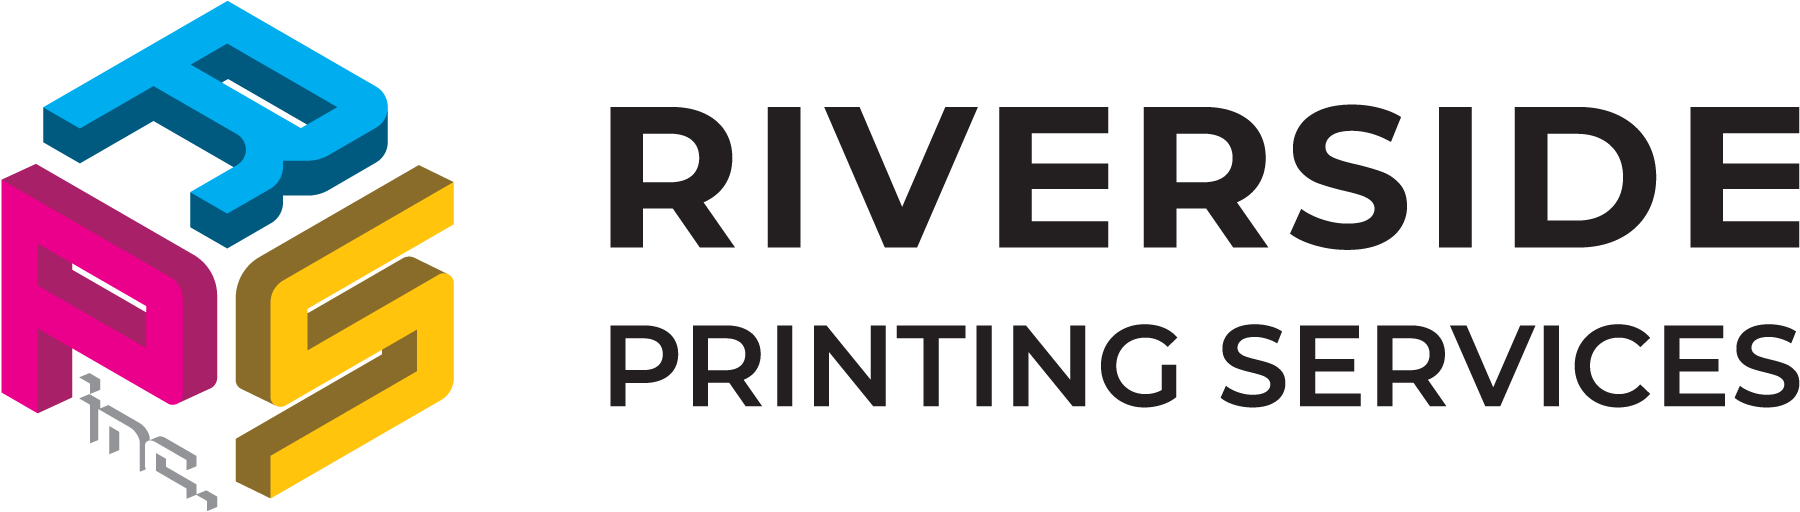 Riverside Printing